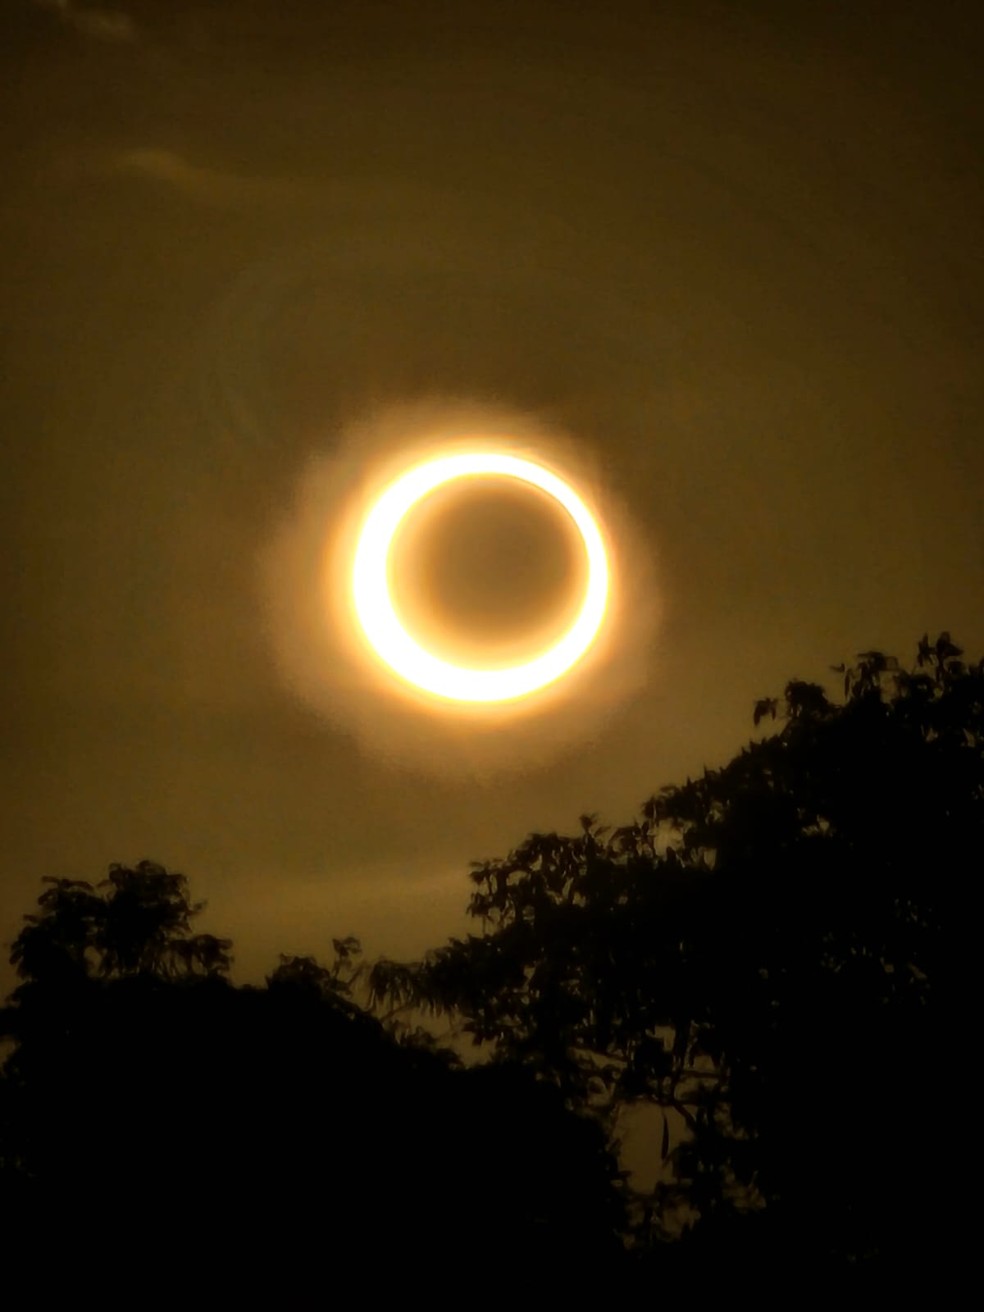 Foto tirada em João Pessoa no momento da anularidade total, às 16h49 — Foto: Danielle Carneiro/Semana do Eclipse 2023